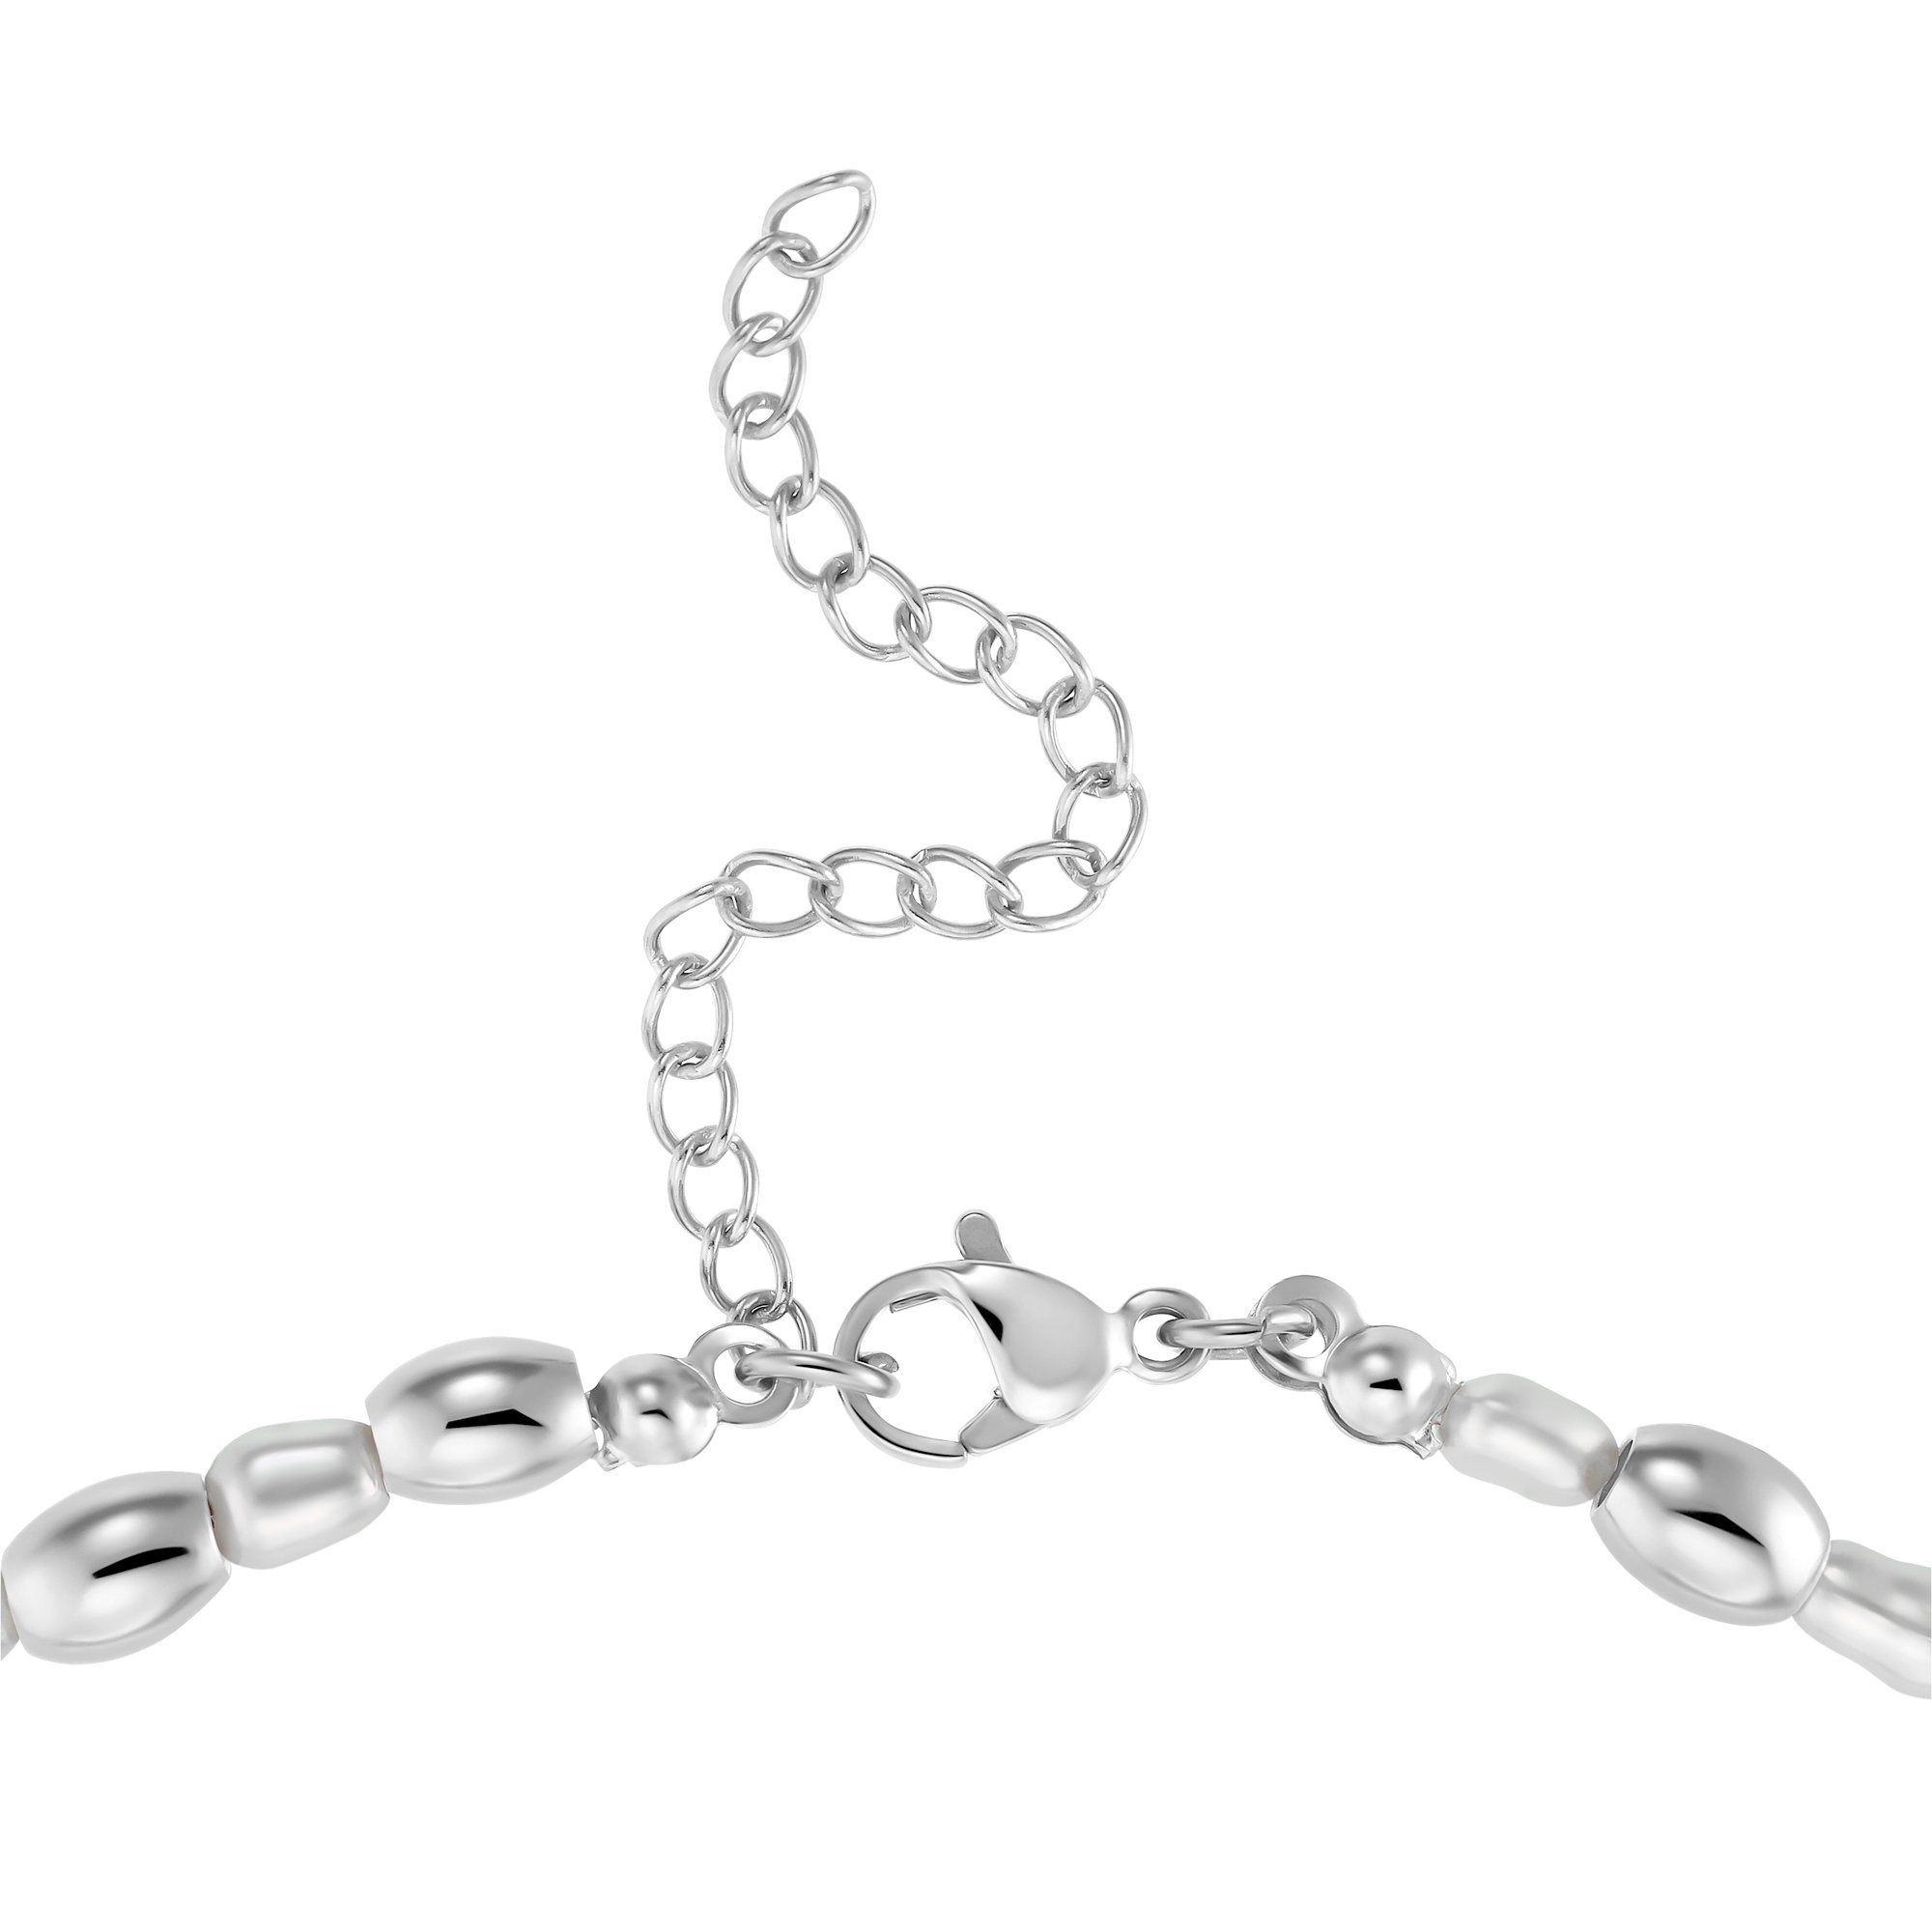 Heideman Collier Maya (inkl. Geschenkverpackung), mit Perlen silberfarben poliert ausgefallenen Halskette